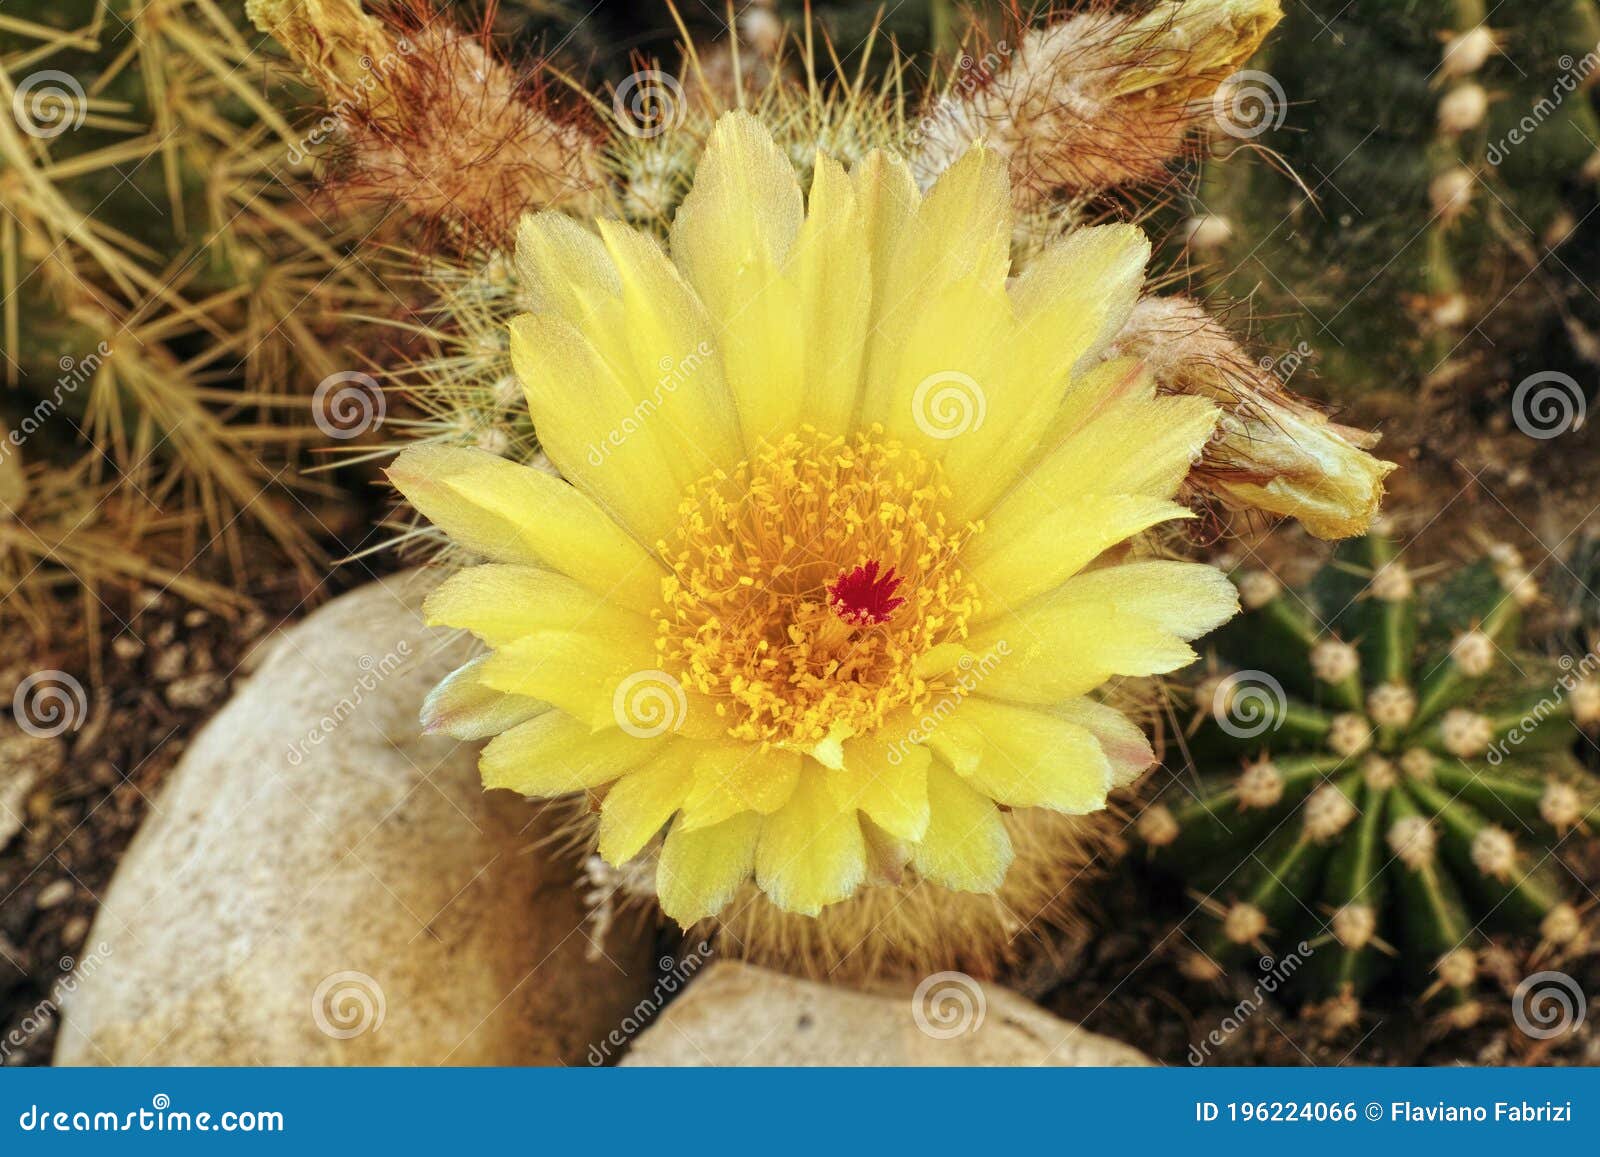 flower of parodia scopa